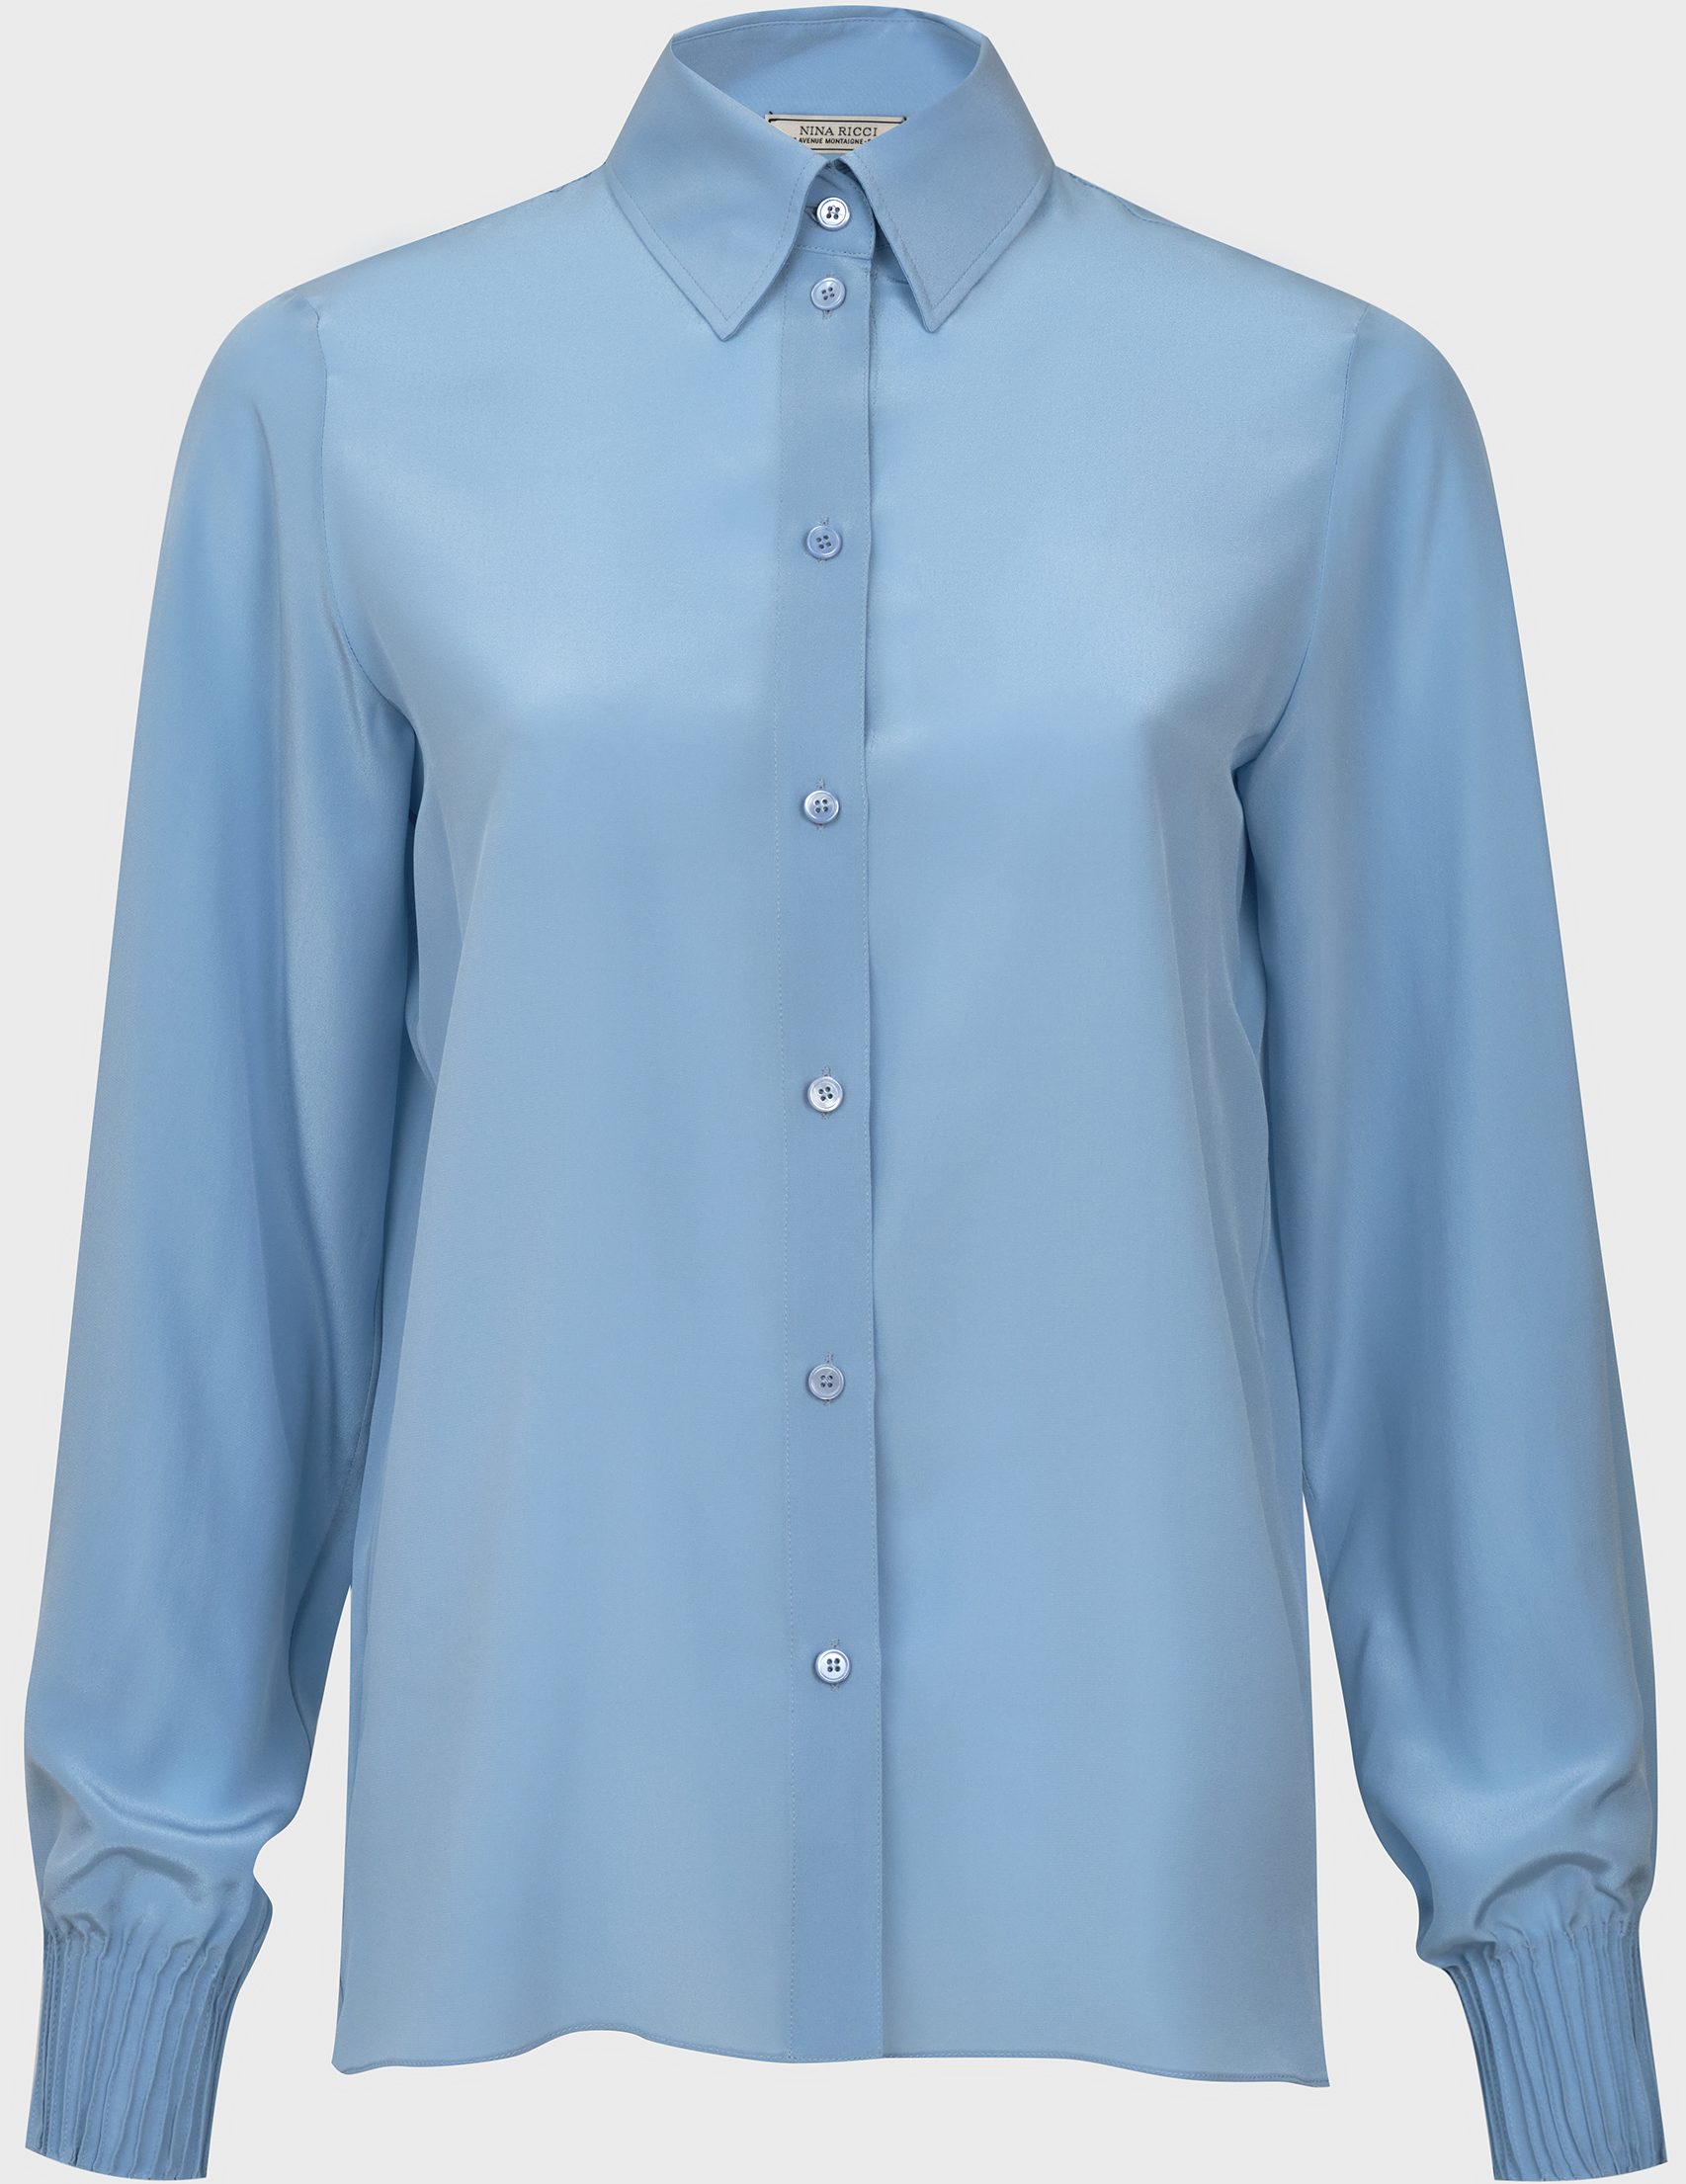 Блузка 18. Рубашка Nina Ricci полосатая.